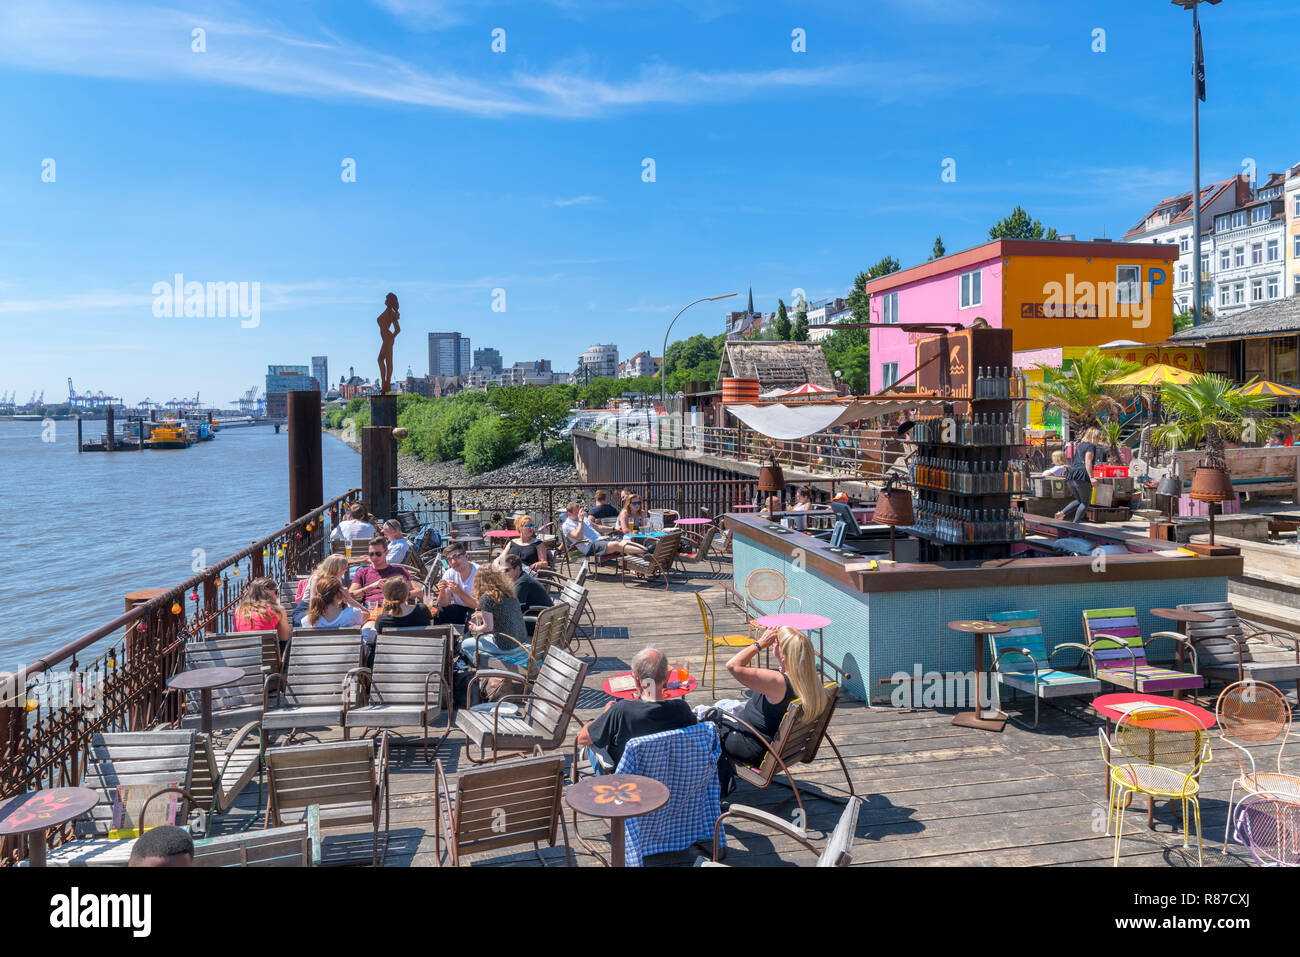 Strandpauli Stadt Strand an der Norderelbe, Hamburg, Deutschland Stockfoto